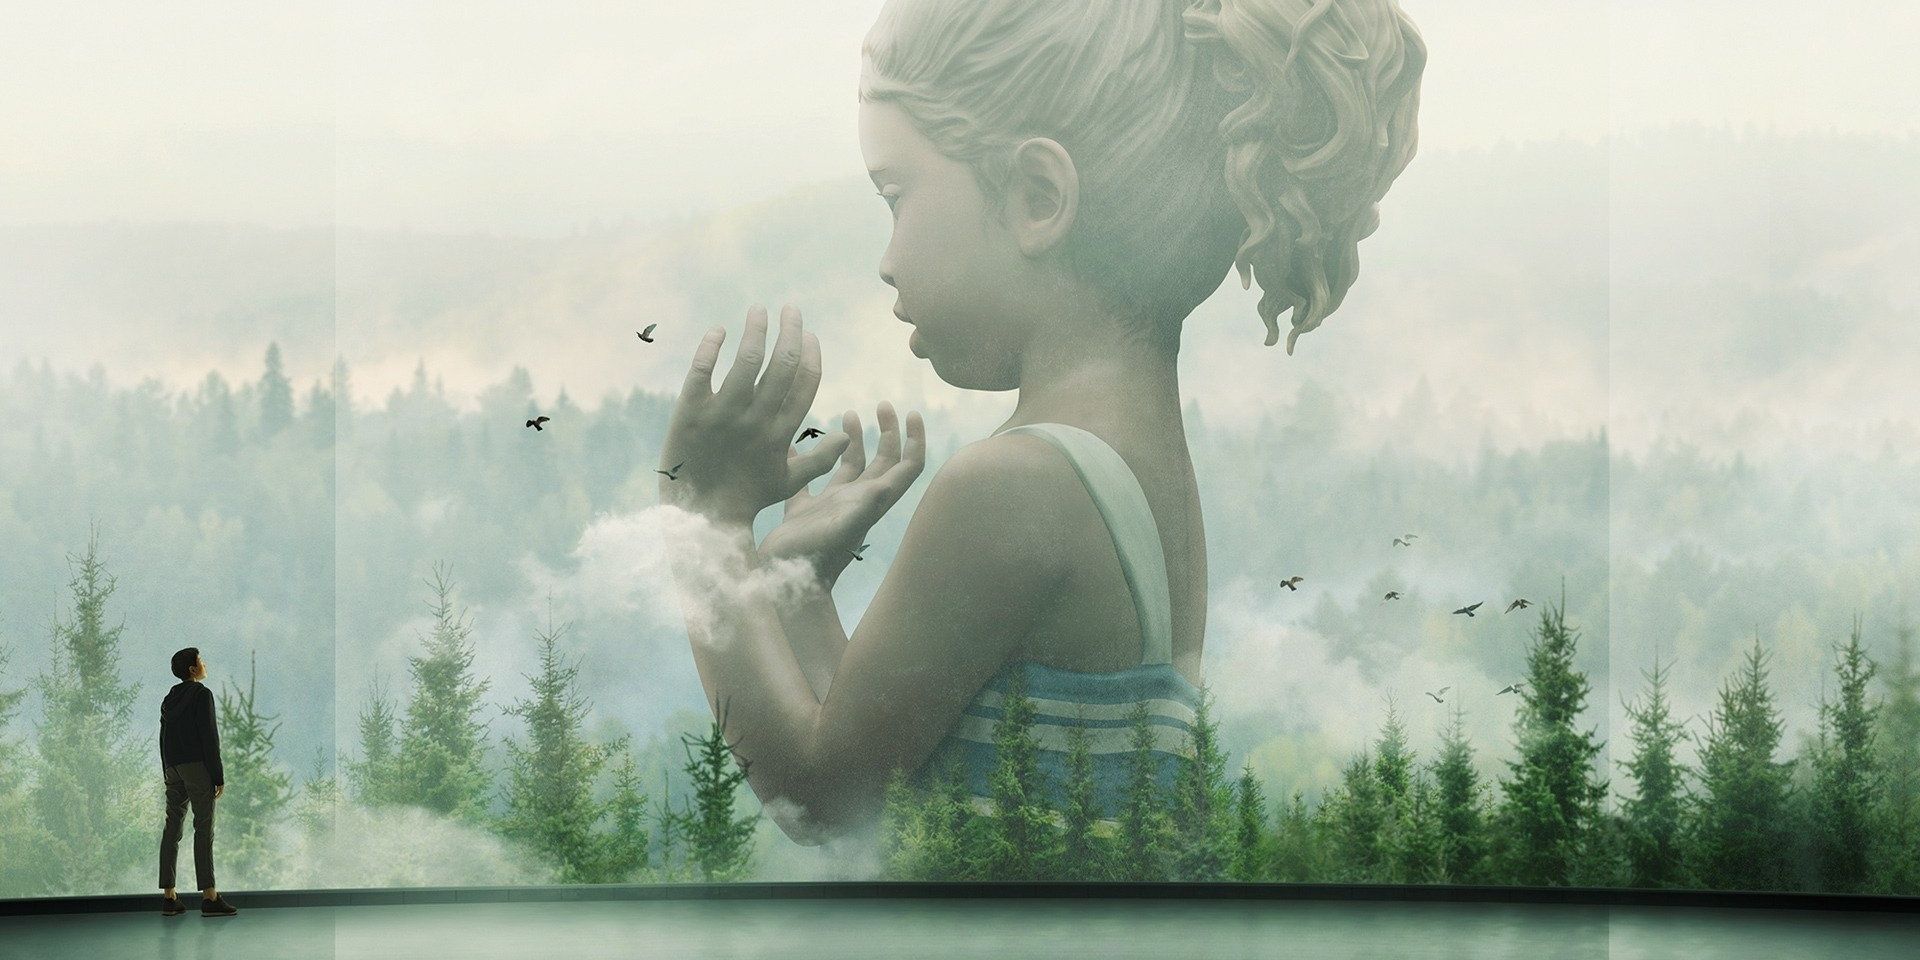 Лили смотрит на большой экран, на котором изображена статуя ребенка Амайи, возвышающаяся над лесом, из шоу Devs.